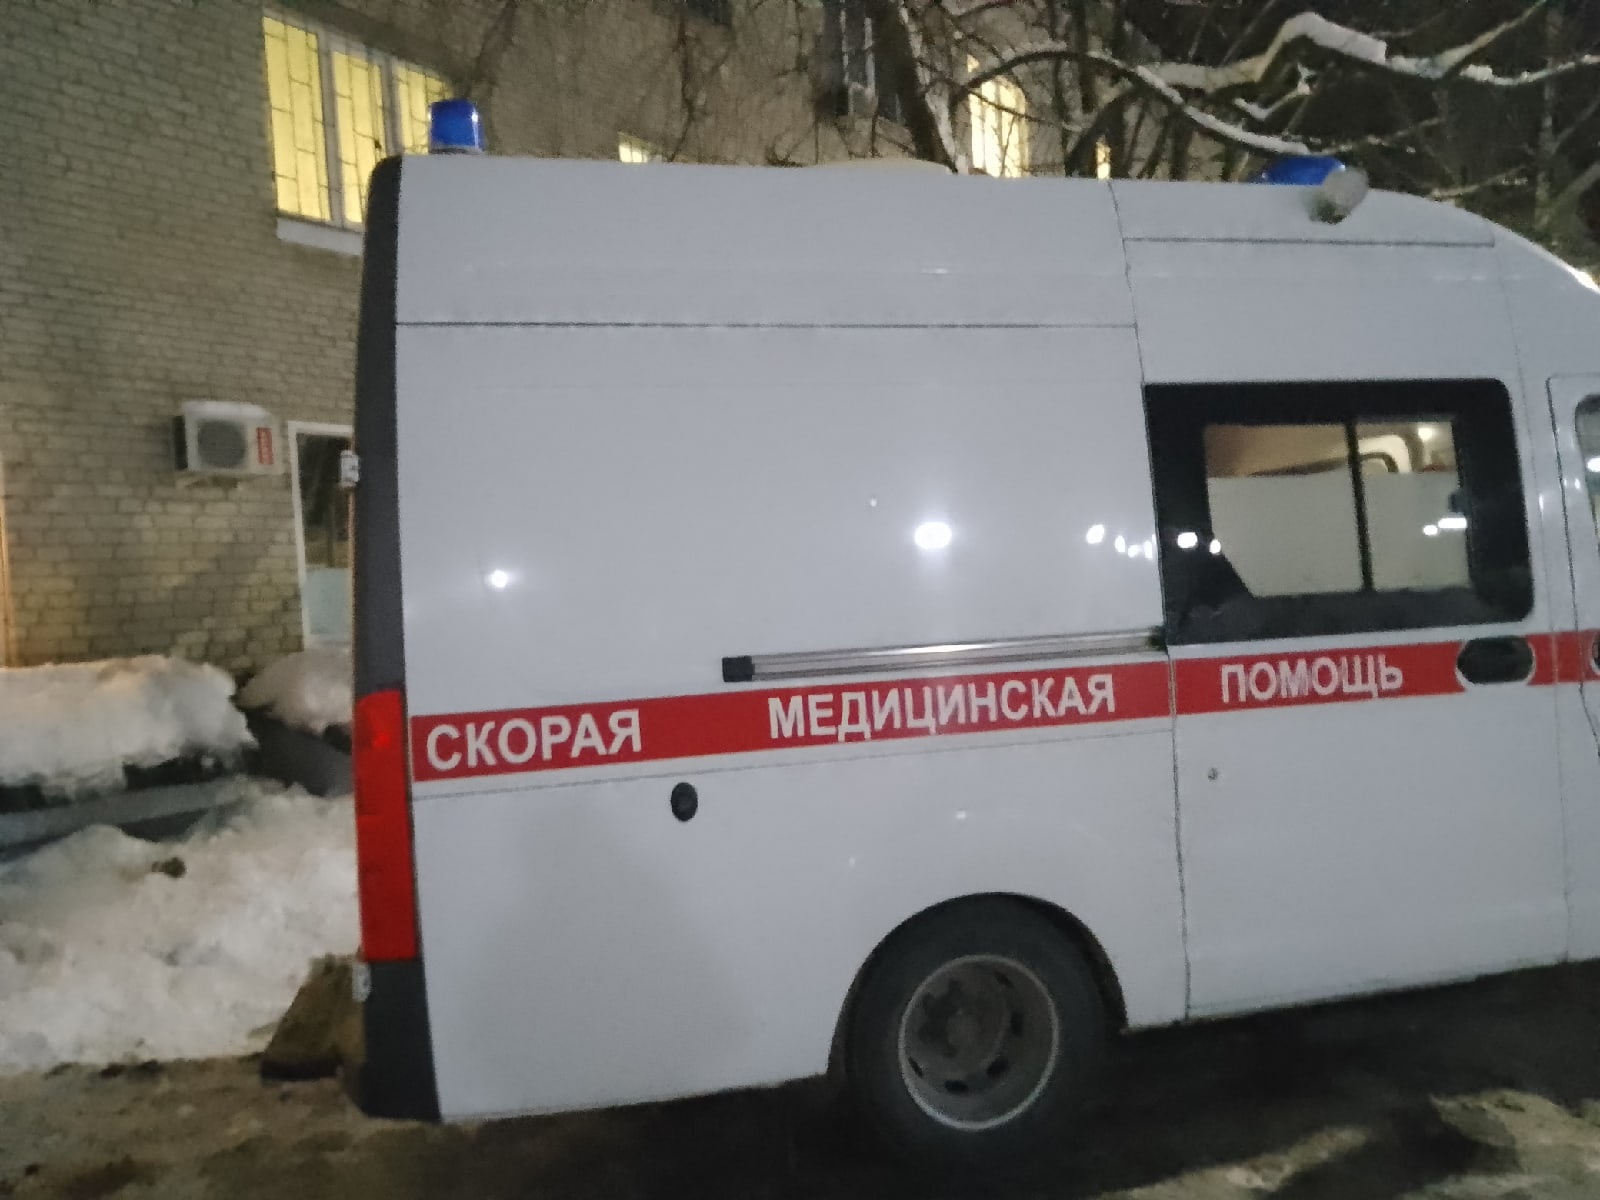 Родители умершего двухлетнего ребенка пытаются наказать врачей в Нижнем Новгороде